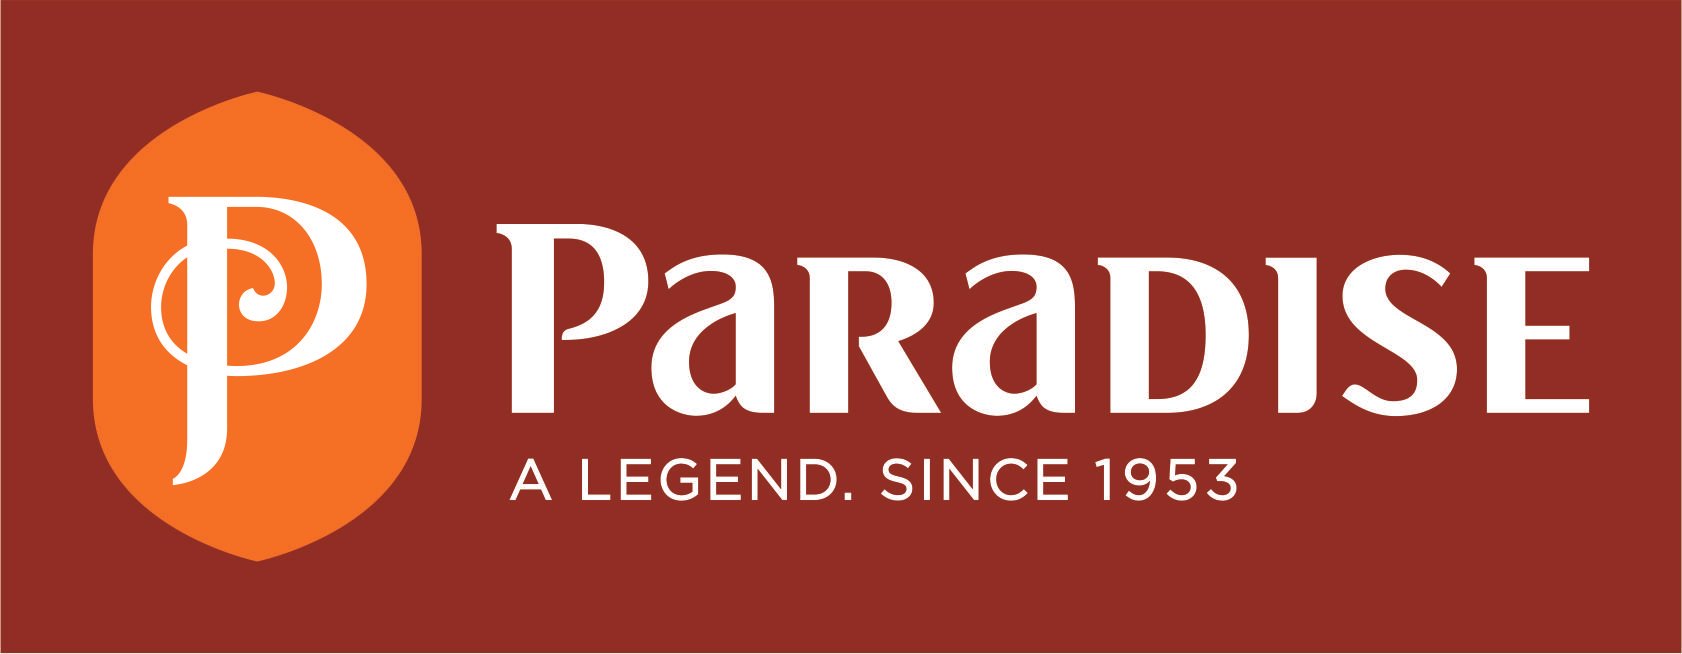 Paradise Logo - Paradise logos | Paradise biryani | Best restaurants in india